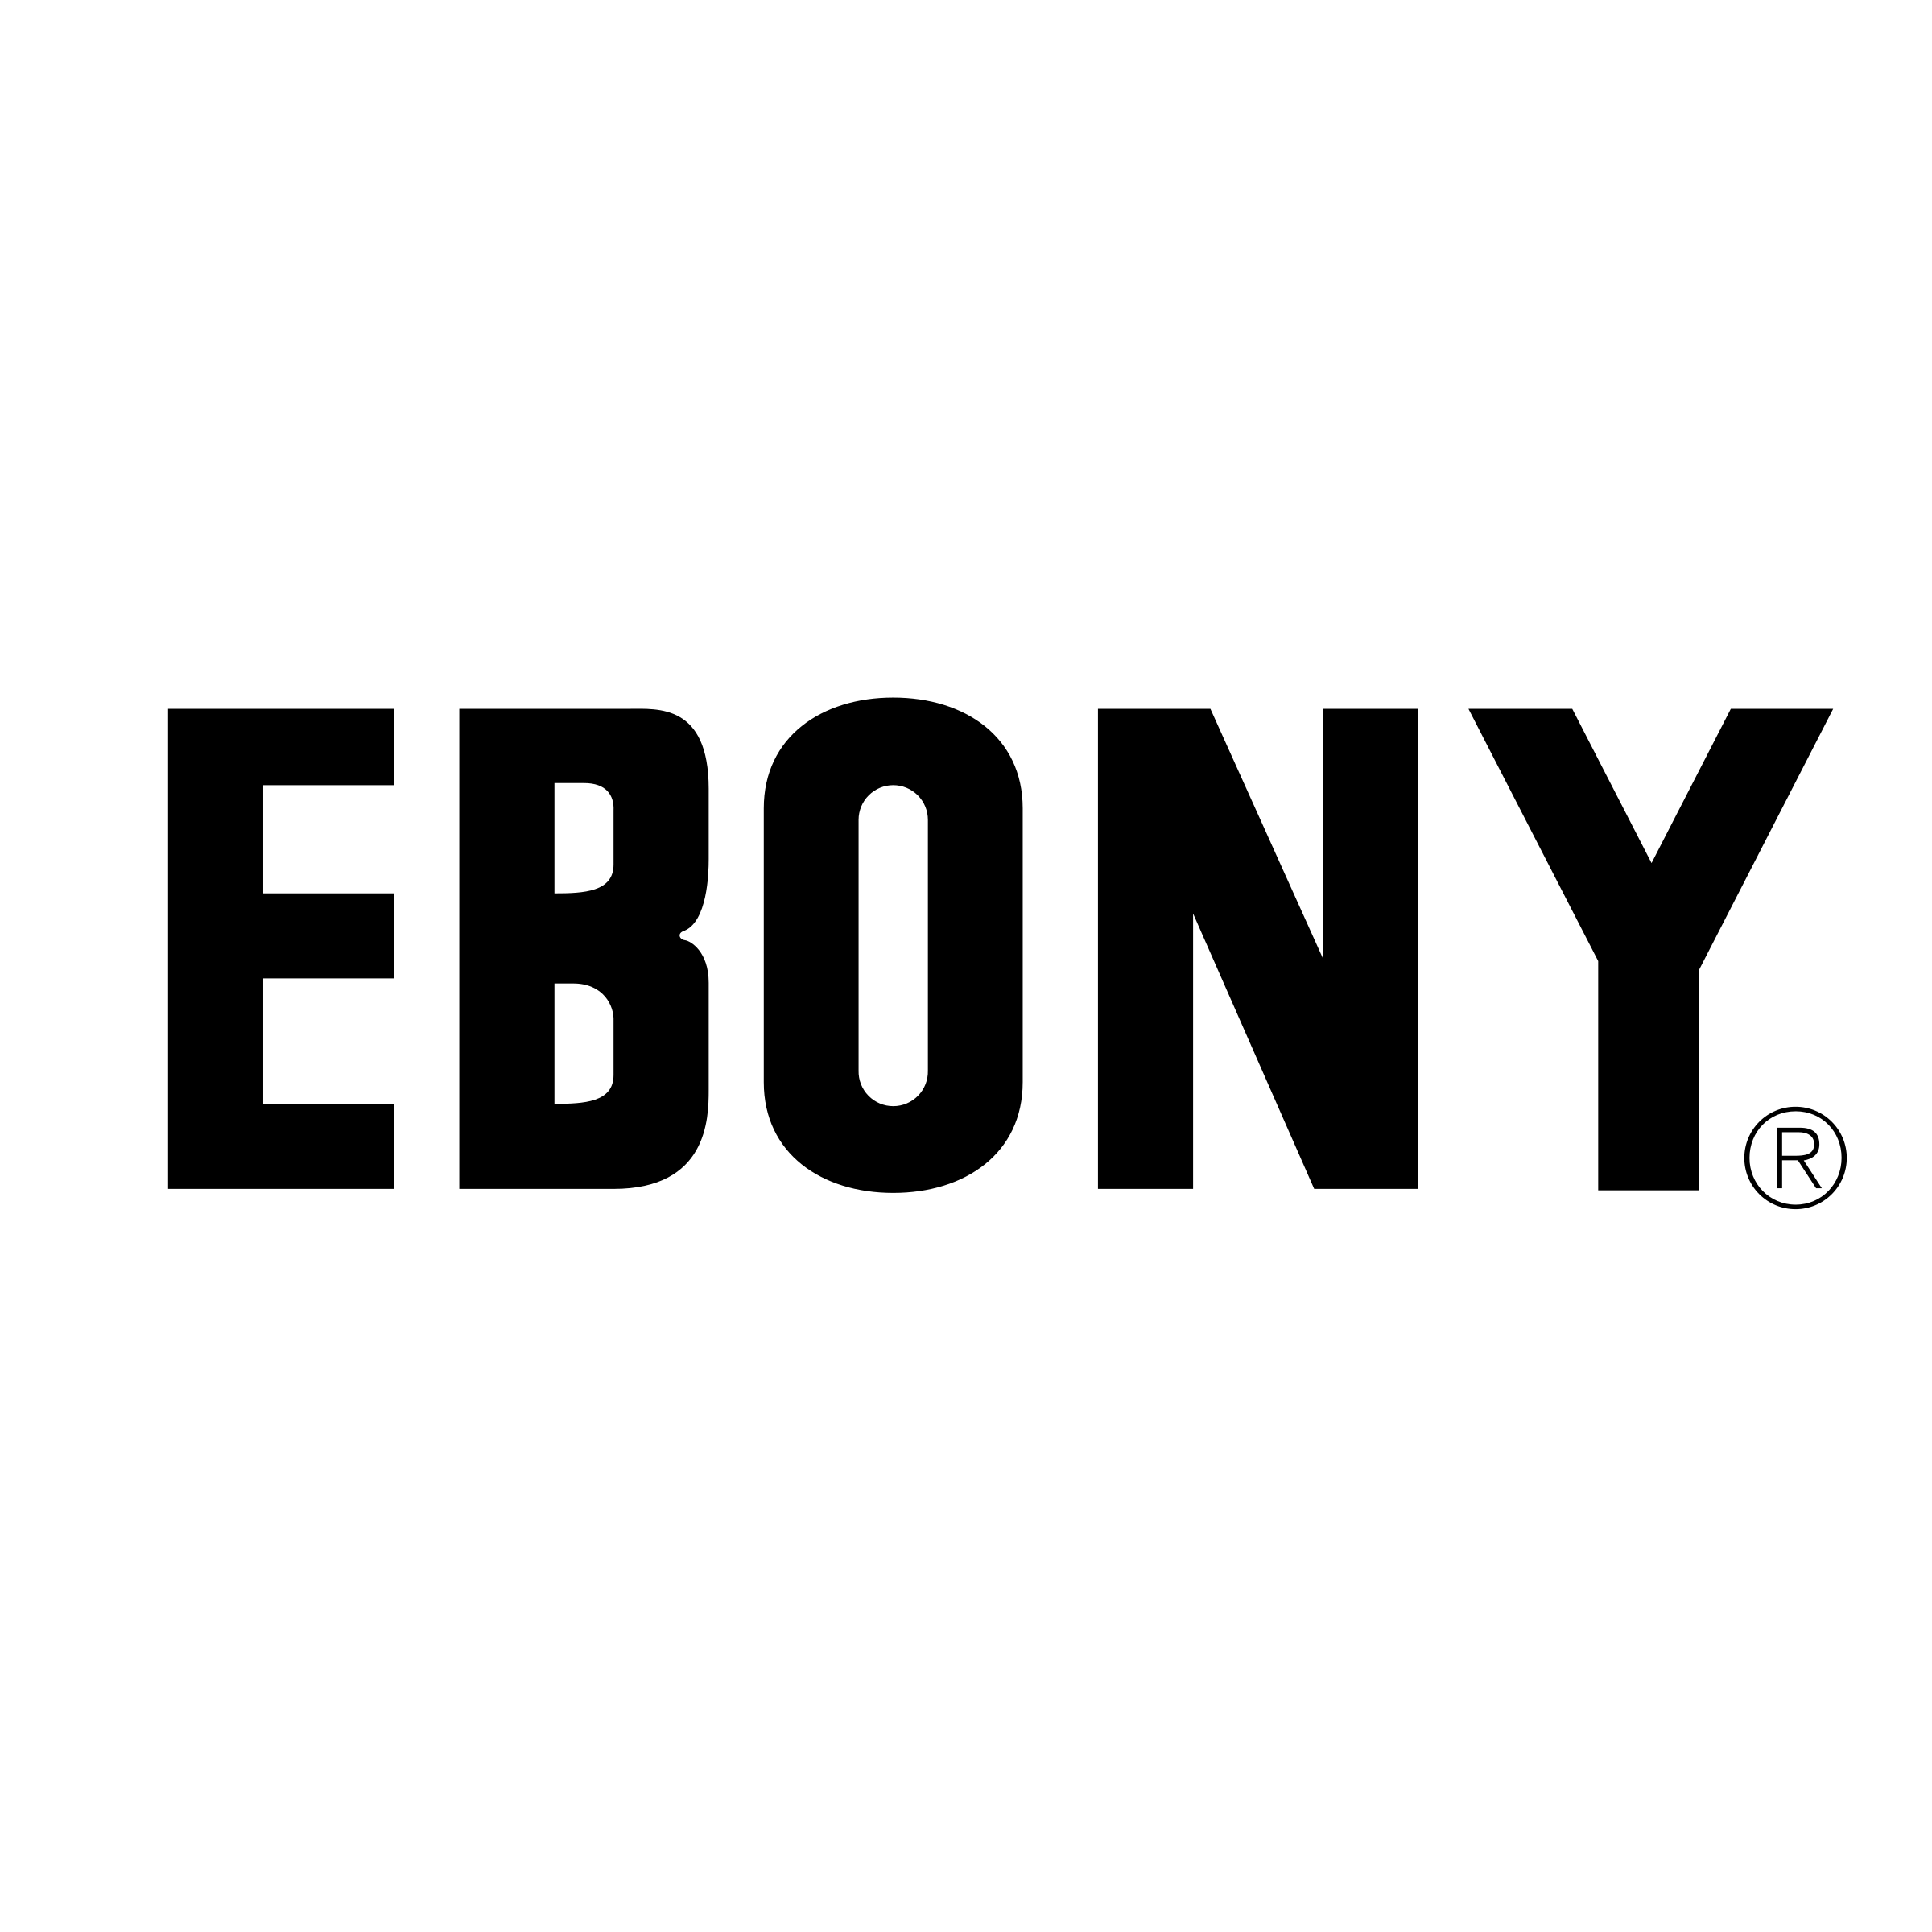 ebony-logo-black-and-white.png